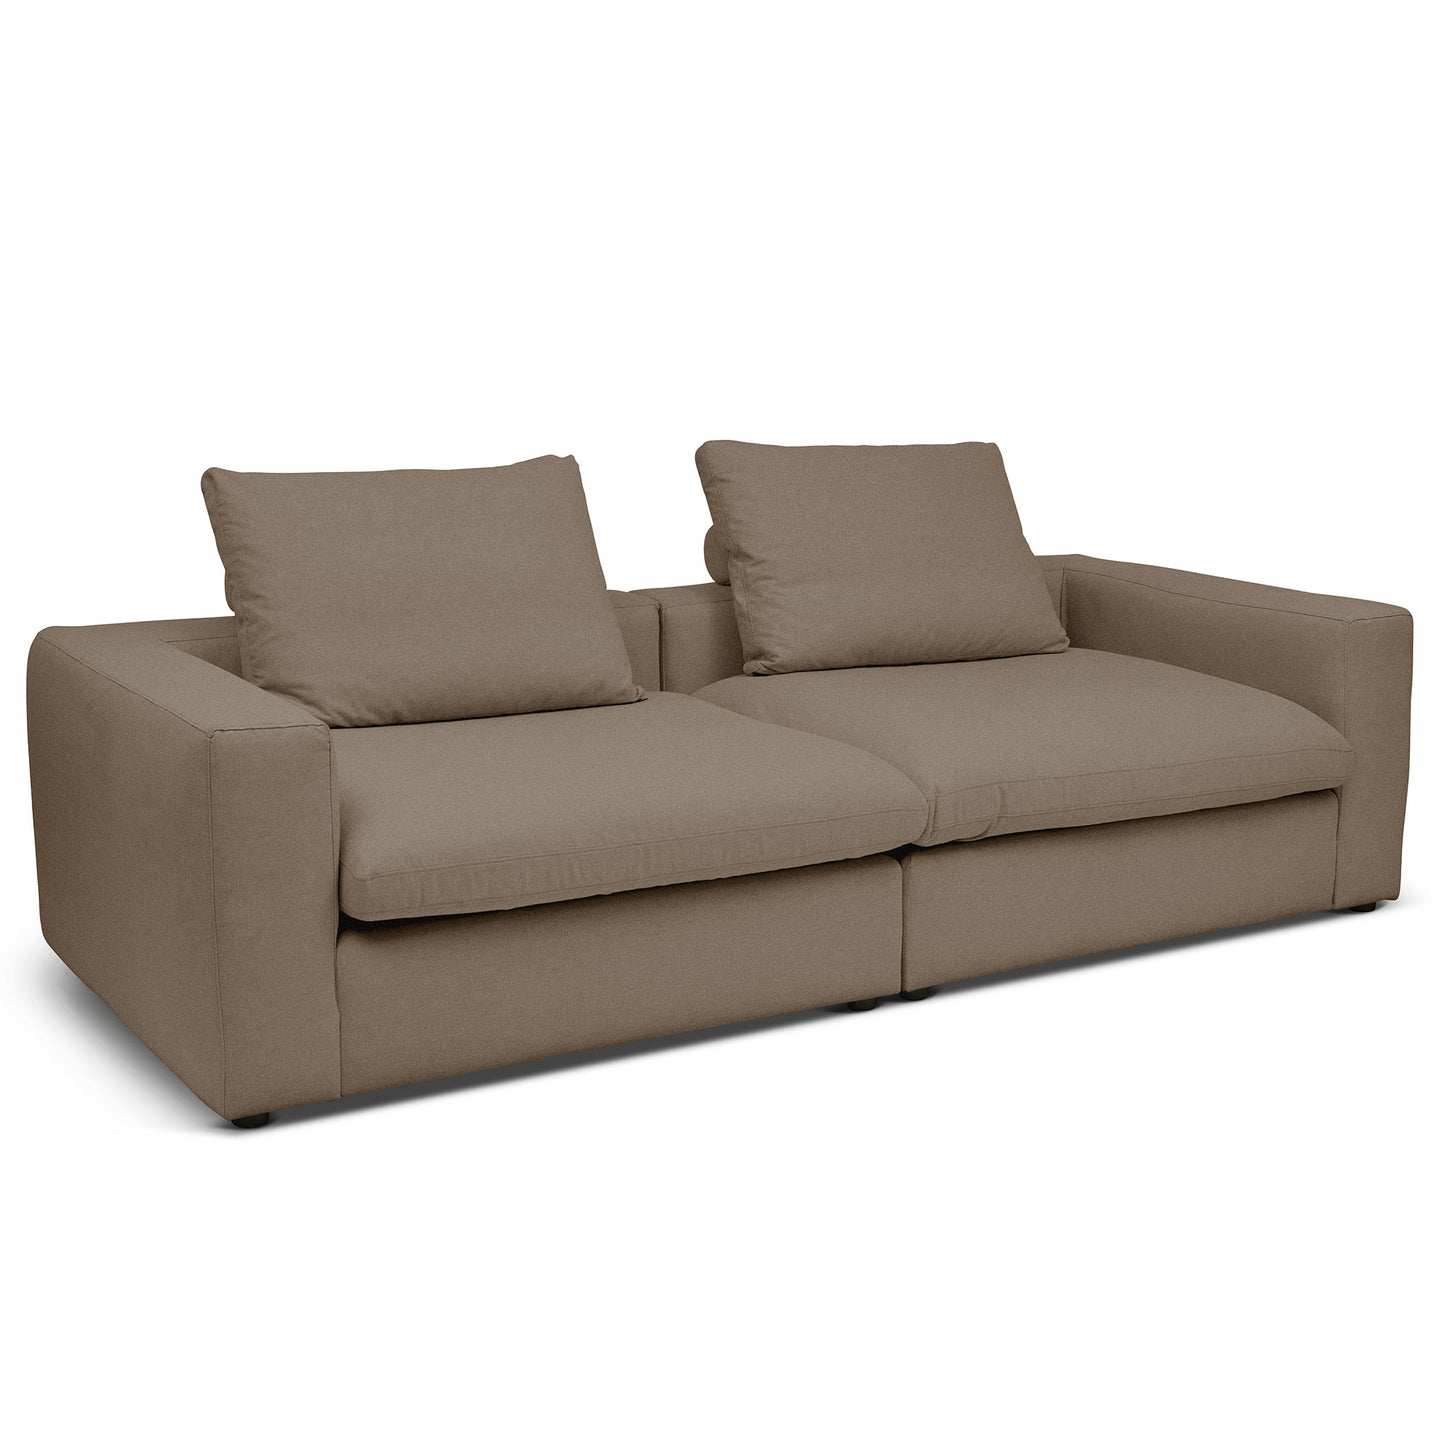 Extra djup 4-sits soffa i ljusbrun färg. Palazzo är en byggbar modulsoffa